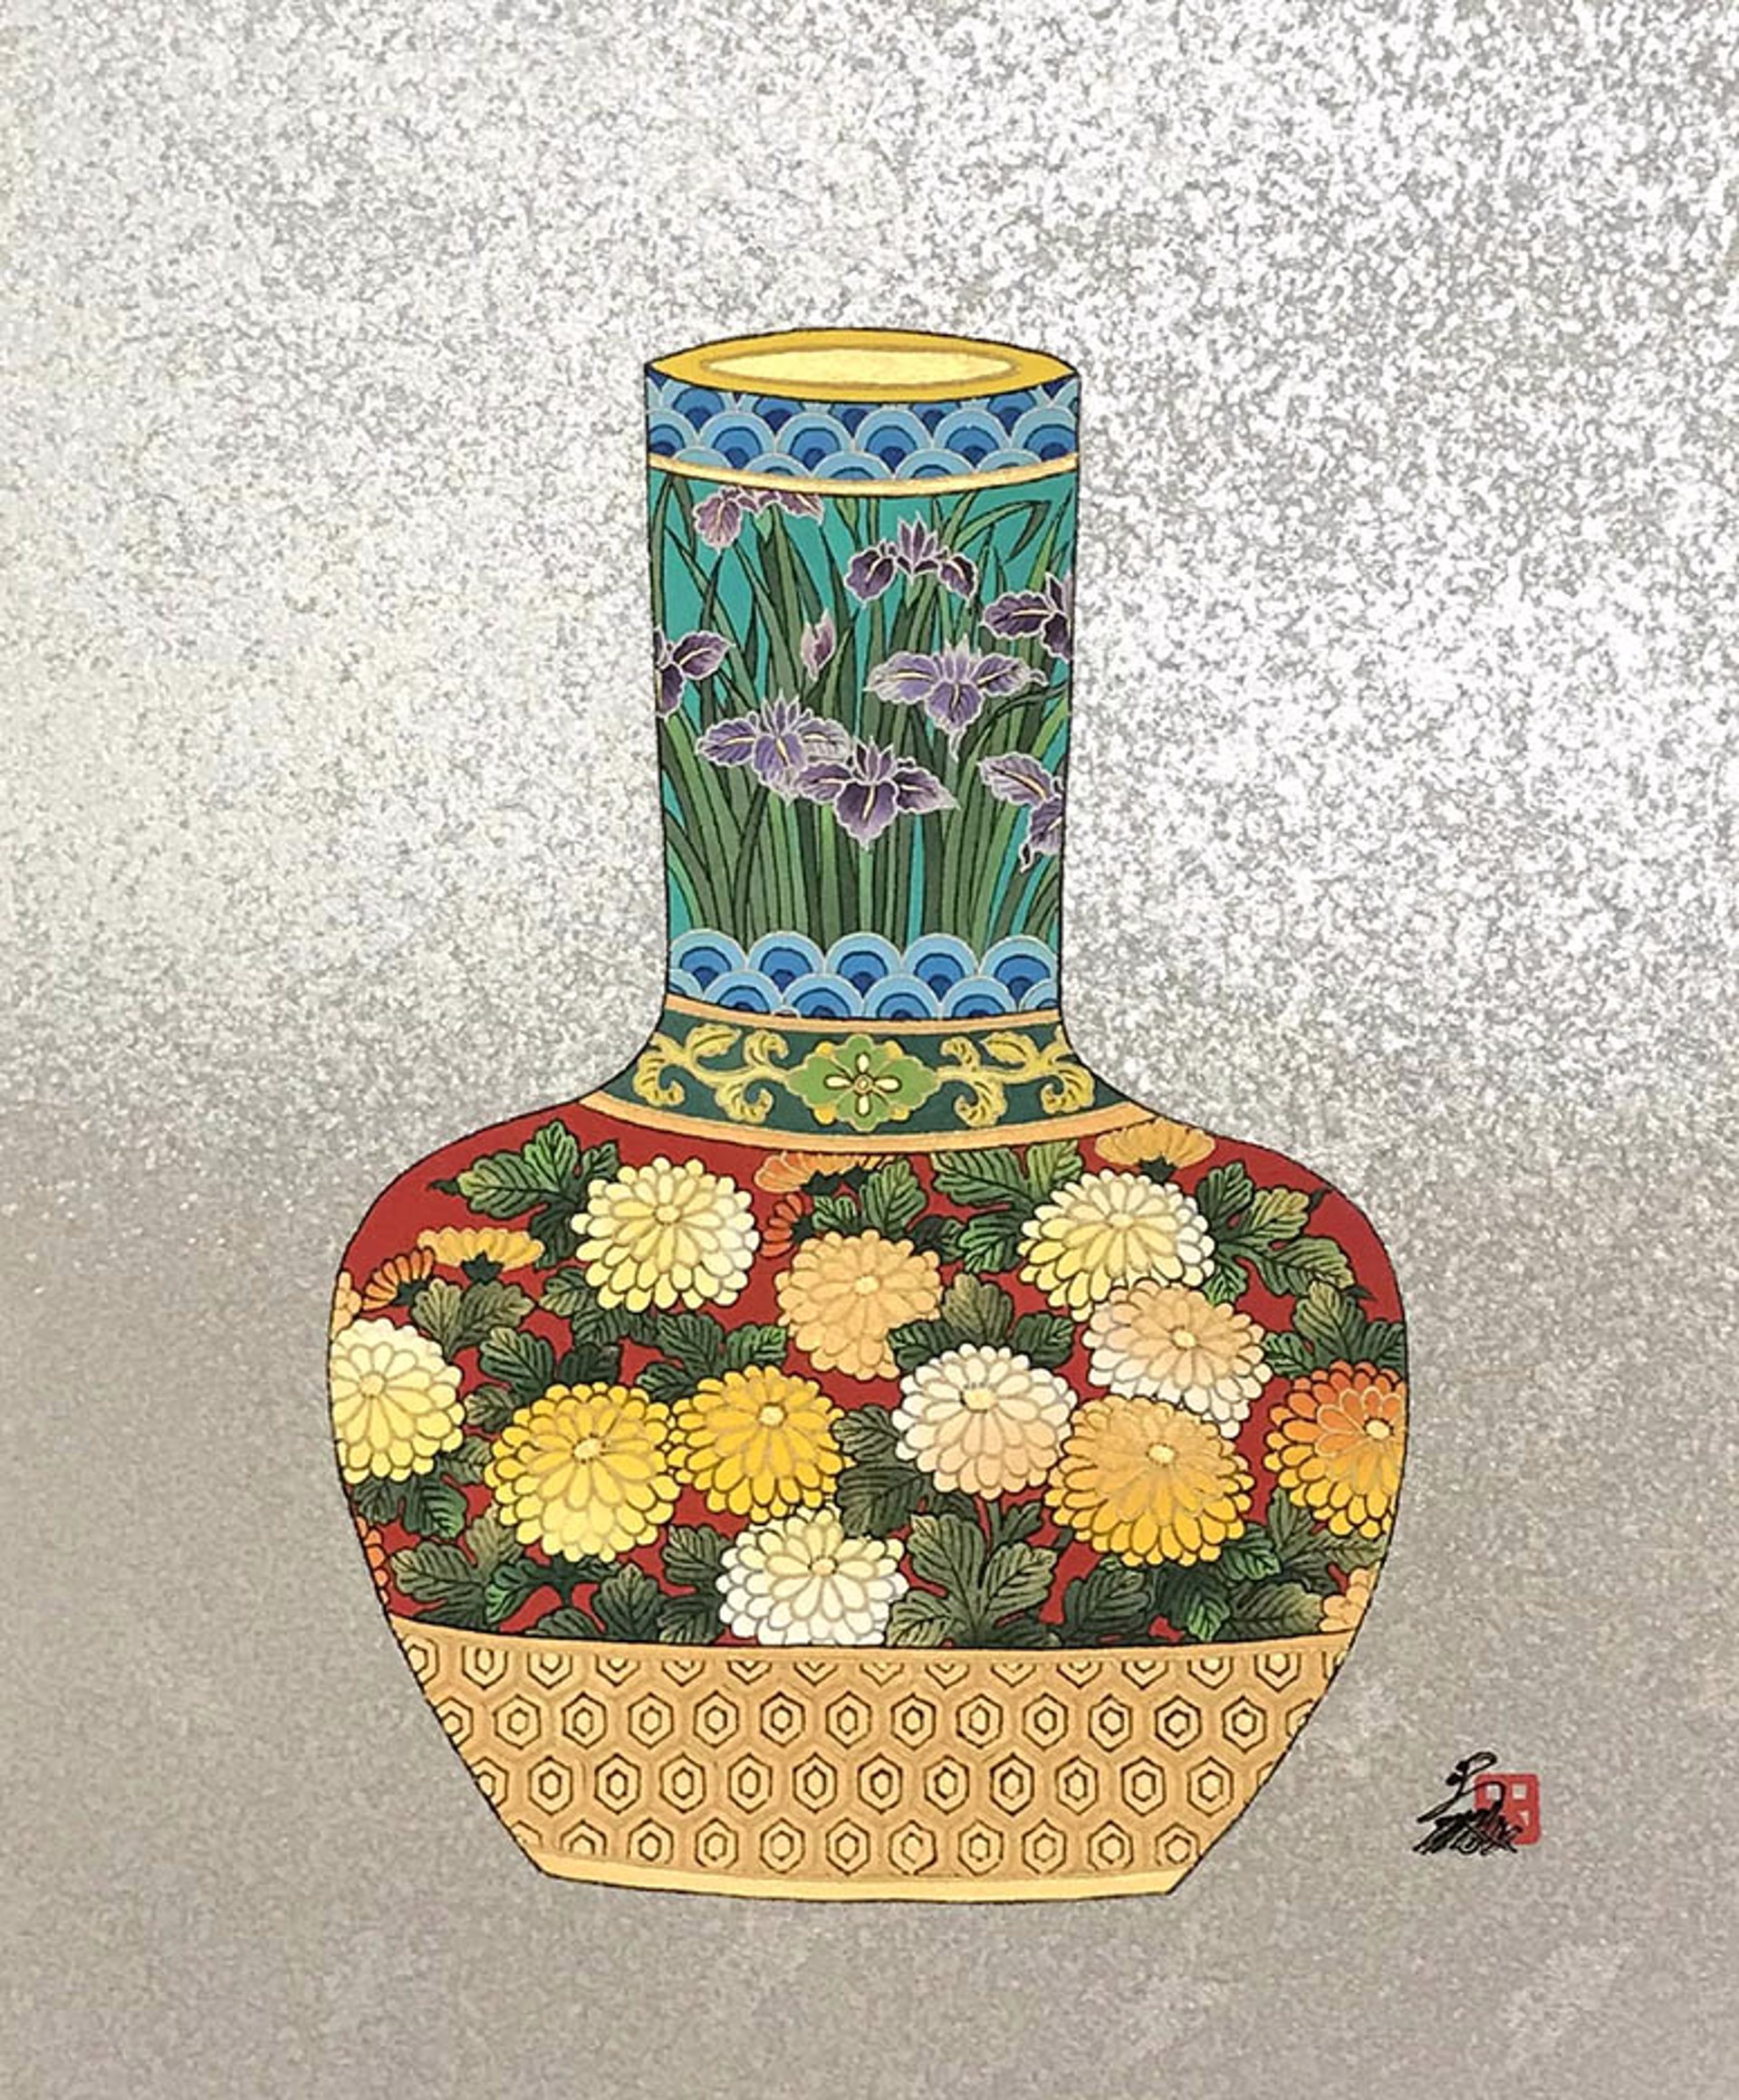 Fantasy Of Vase 2 by Hisashi Otsuka